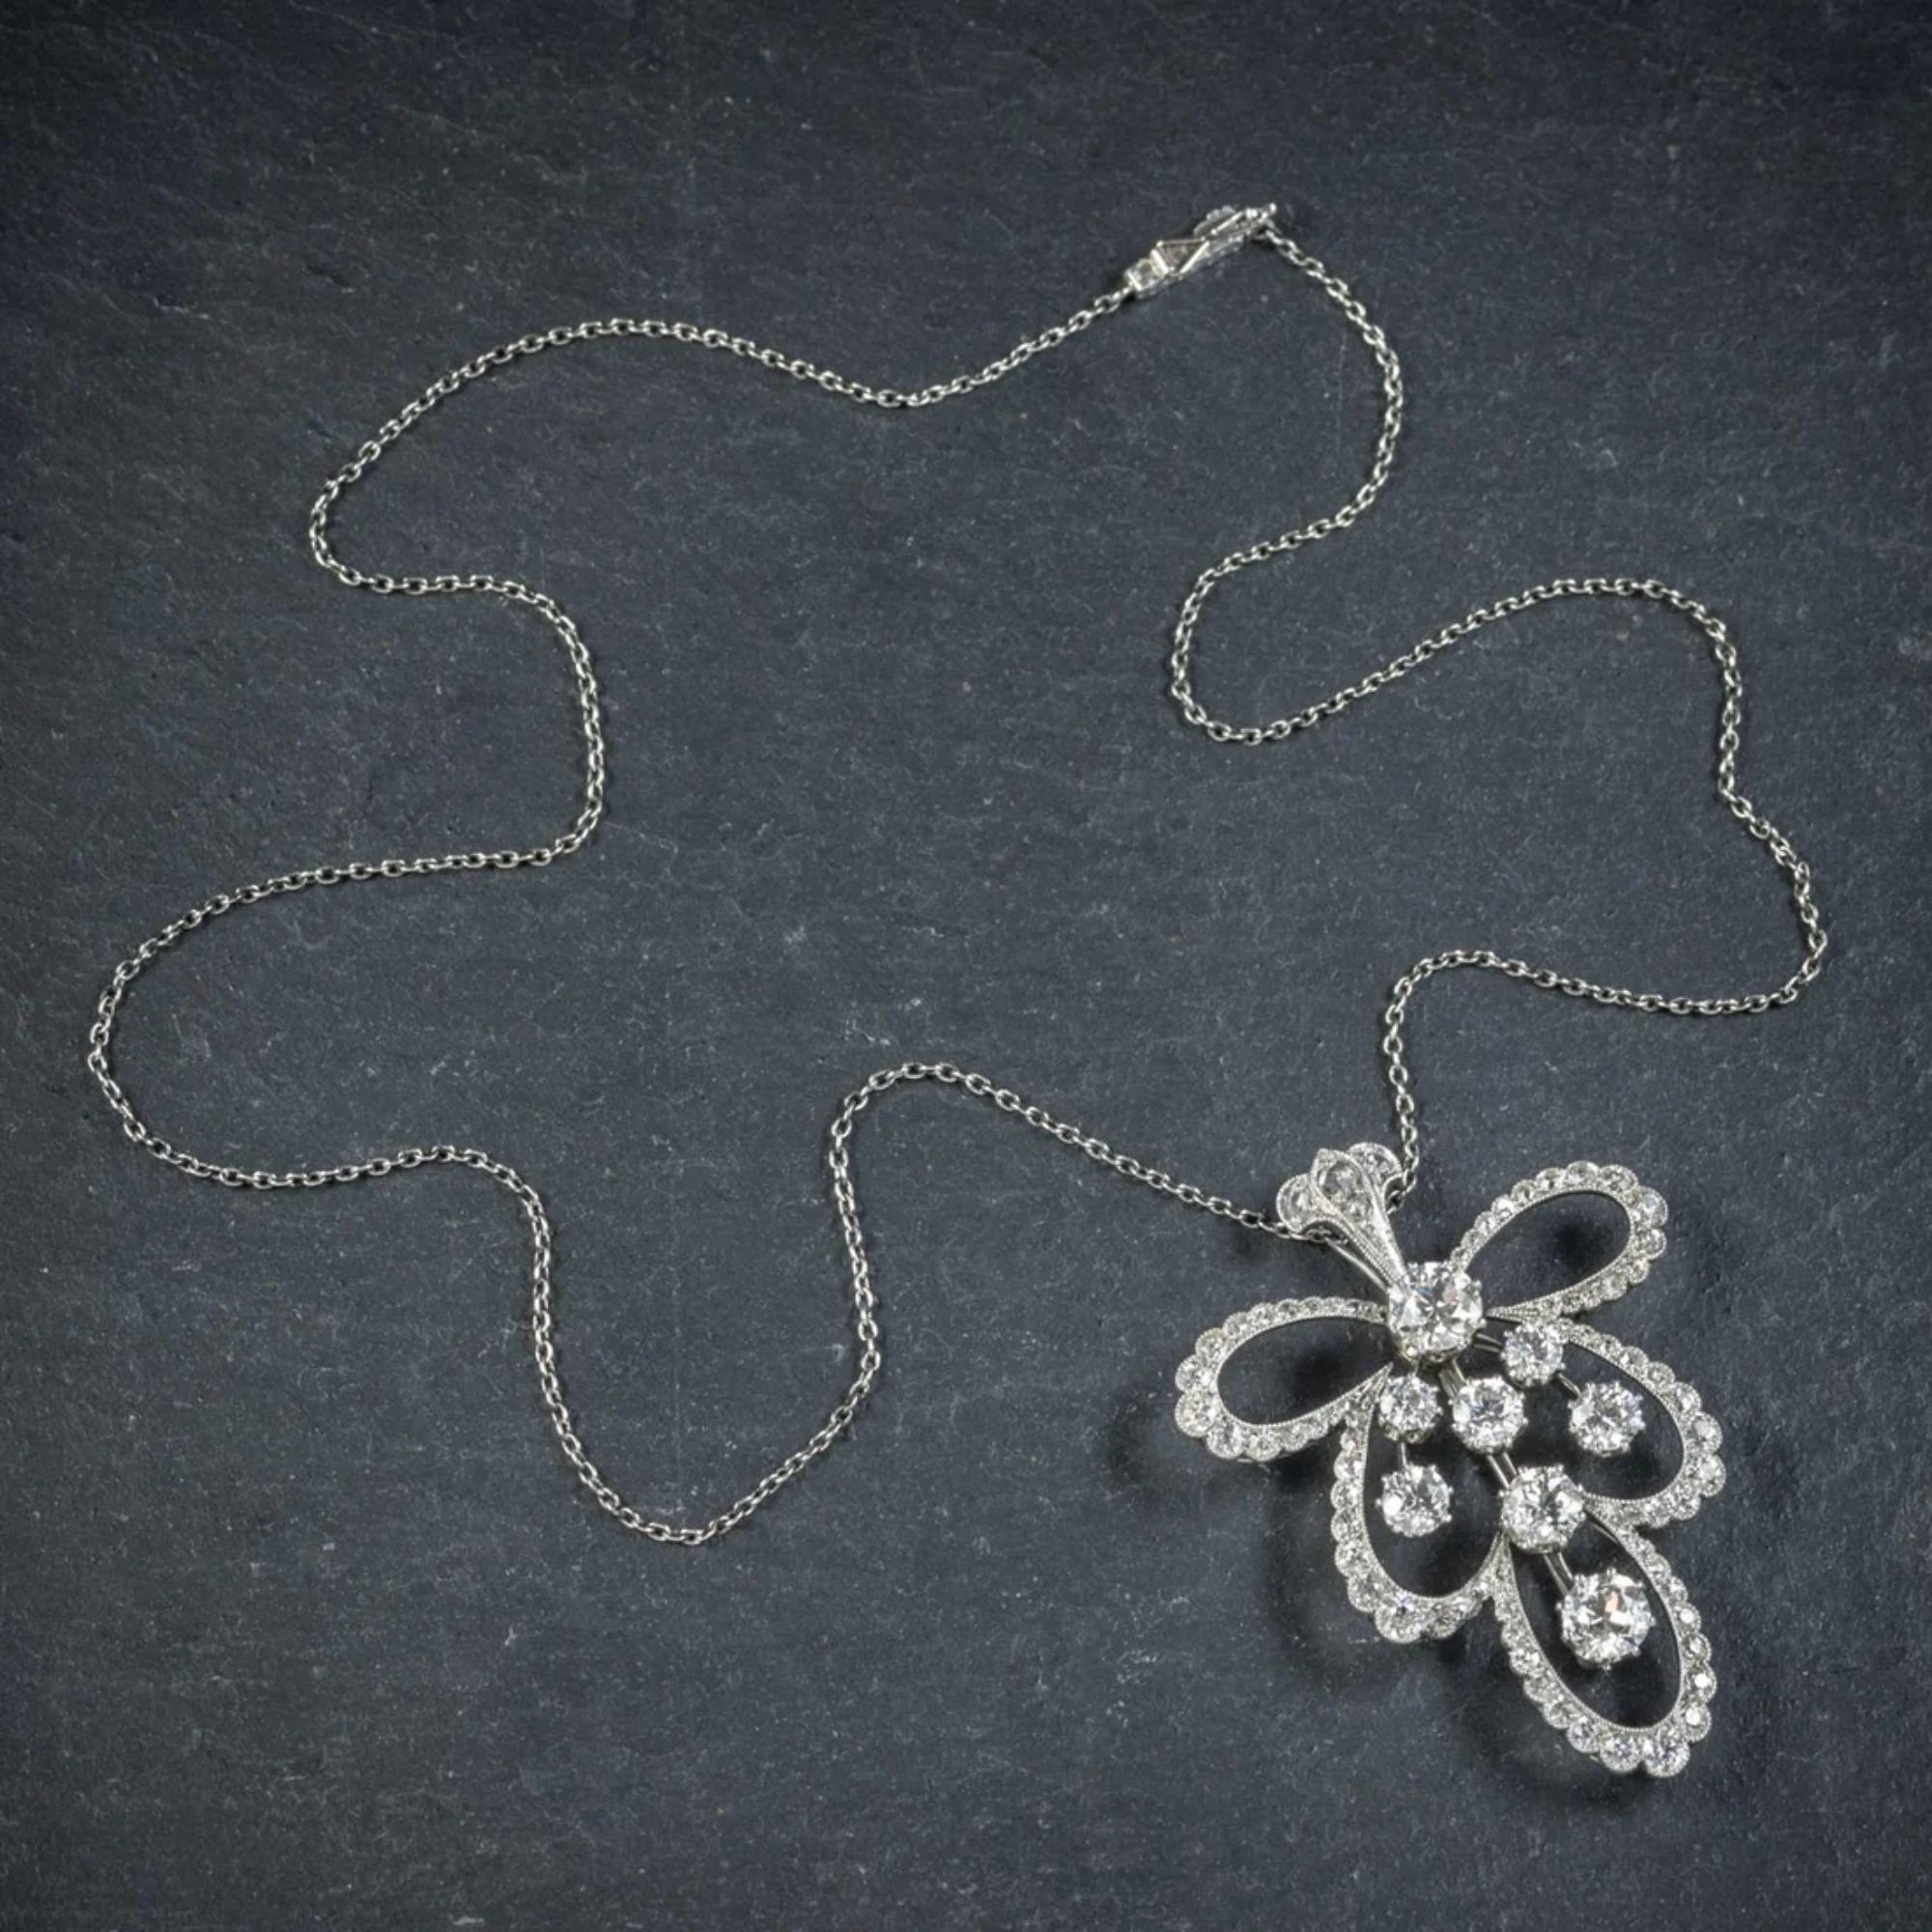 Cet extraordinaire collier ancien de style édouardien présente un fabuleux pendentif ajouré orné d'un éblouissant éventail de diamants de taille européenne, dont les plus gros mesurent 0,75 ct (environ 4 ct au total). Les diamants sont de superbe